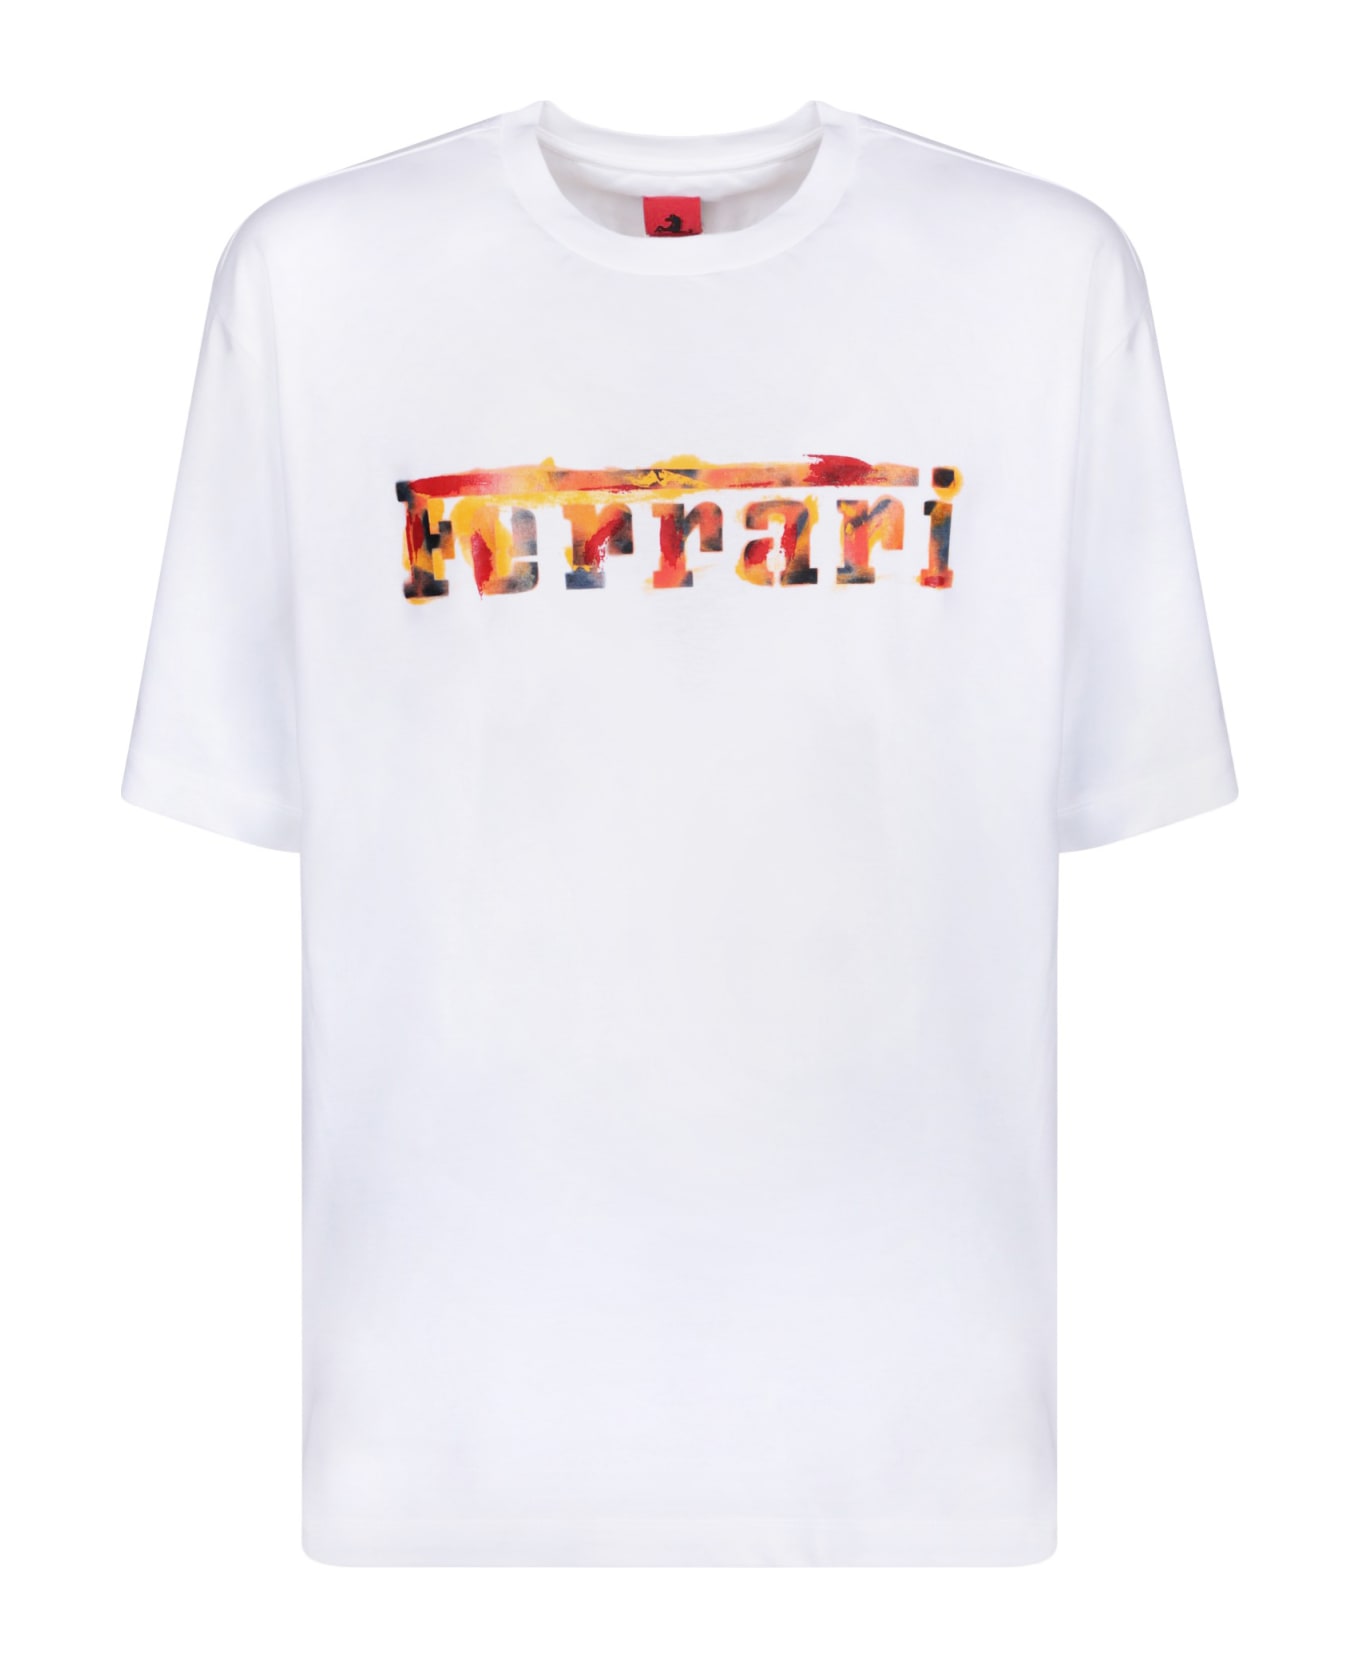 Ferrari Graffiti Logo White T-shirt - White